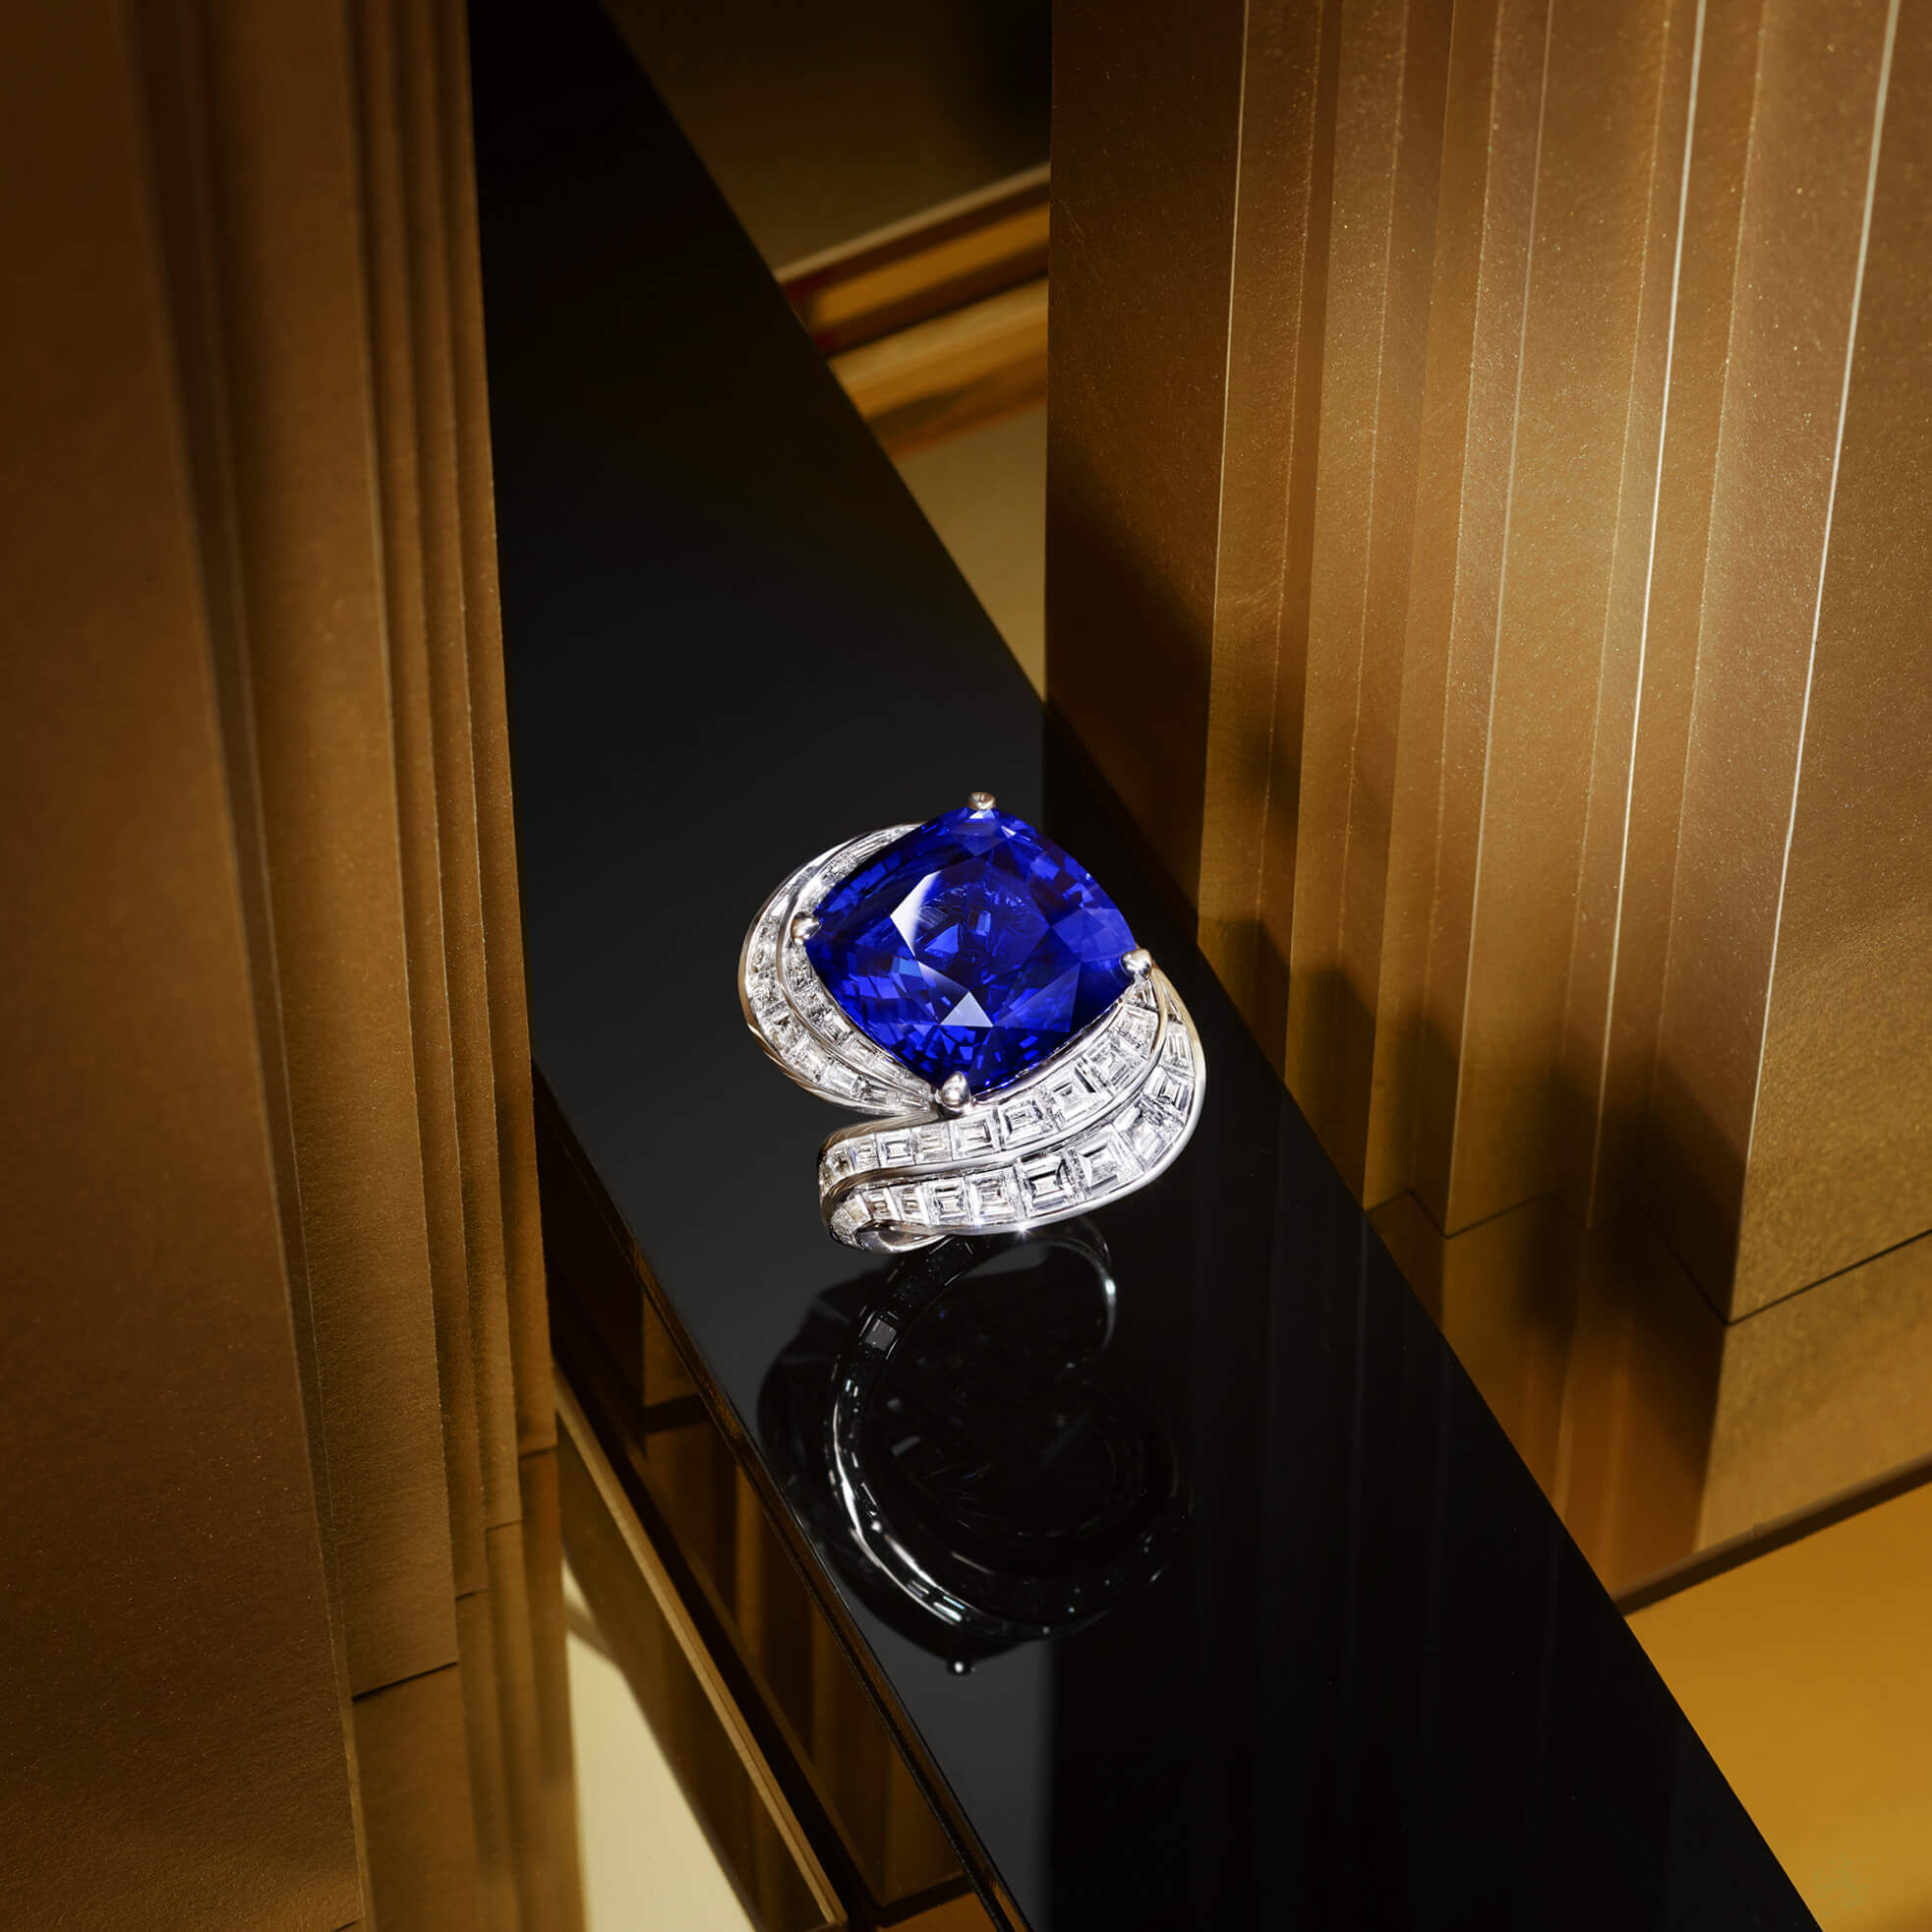 A Graff Sapphire and Diamond Ring featuring a 22.84 ct cushion cut sapphire.